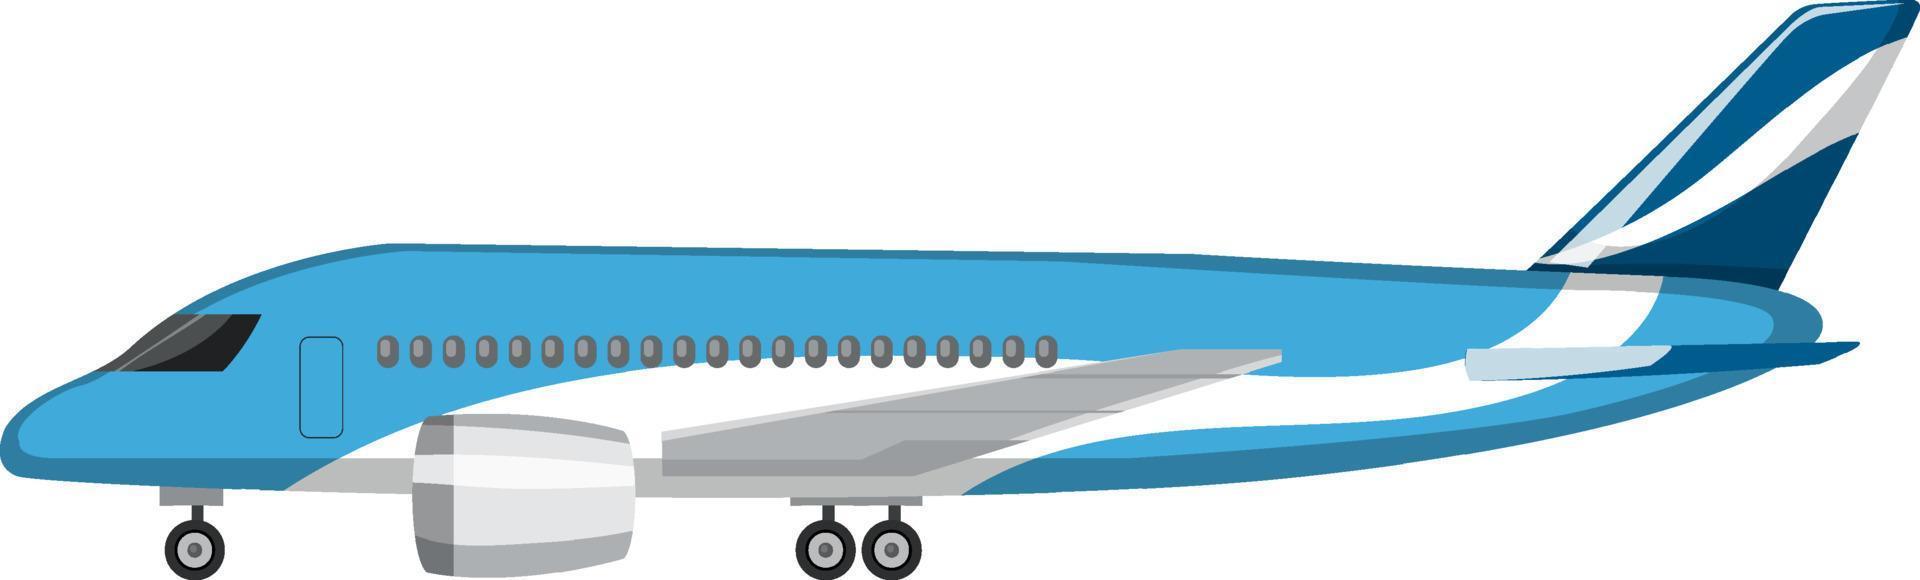 vliegtuig in cartoon-stijl op witte achtergrond vector